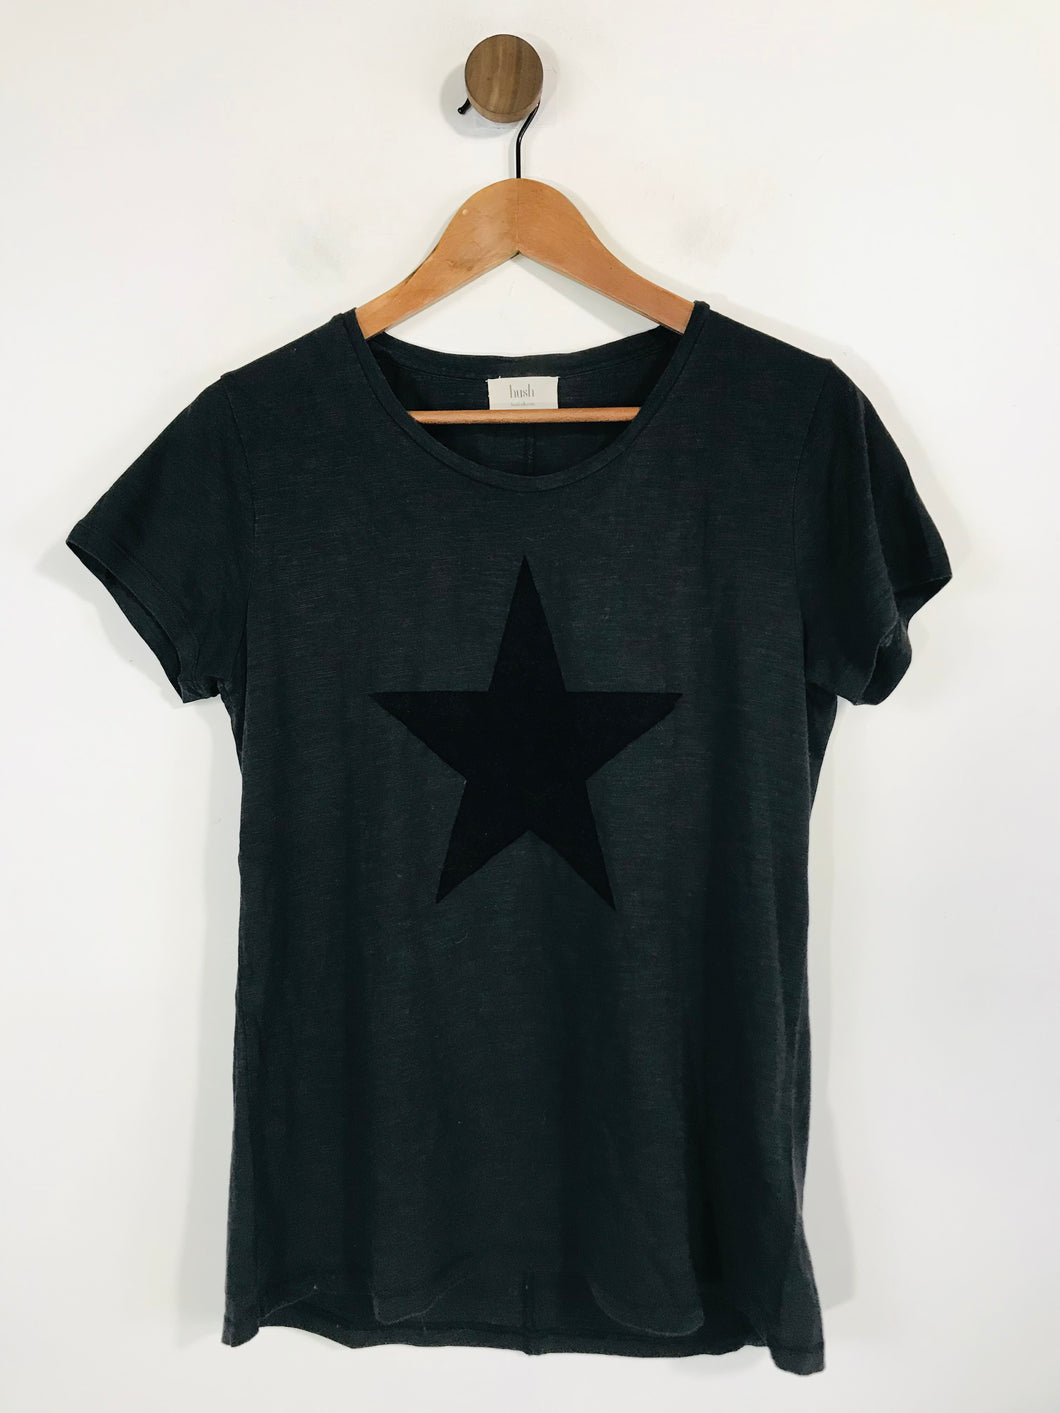 Hush Women's Cotton T-Shirt | S UK8 | Black